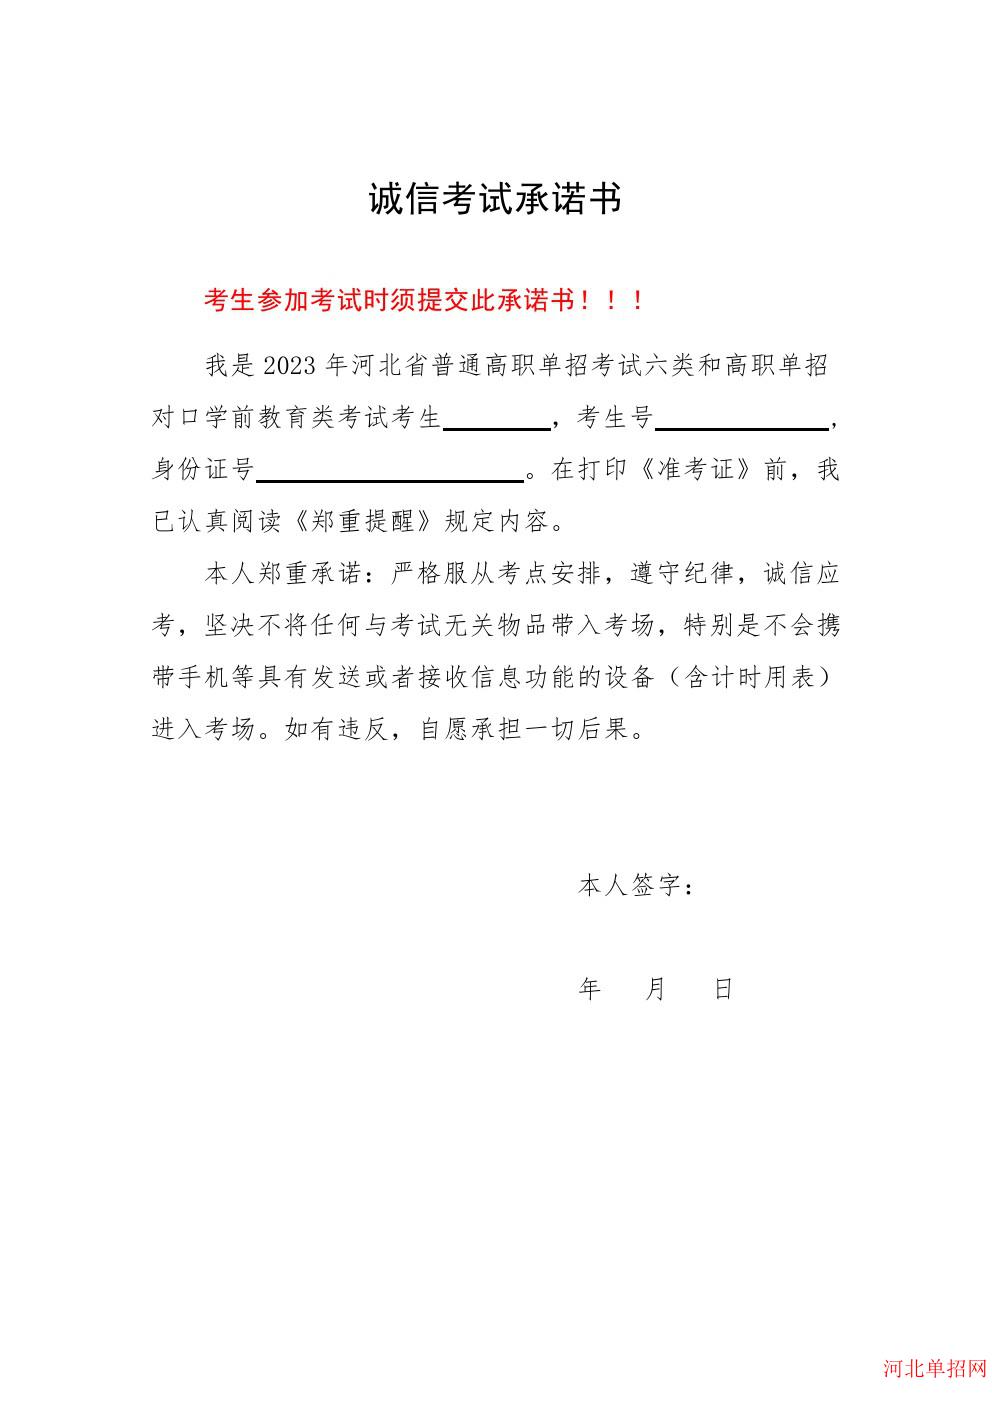 2023年河北省高职单招考试诚信考试承诺书 图10